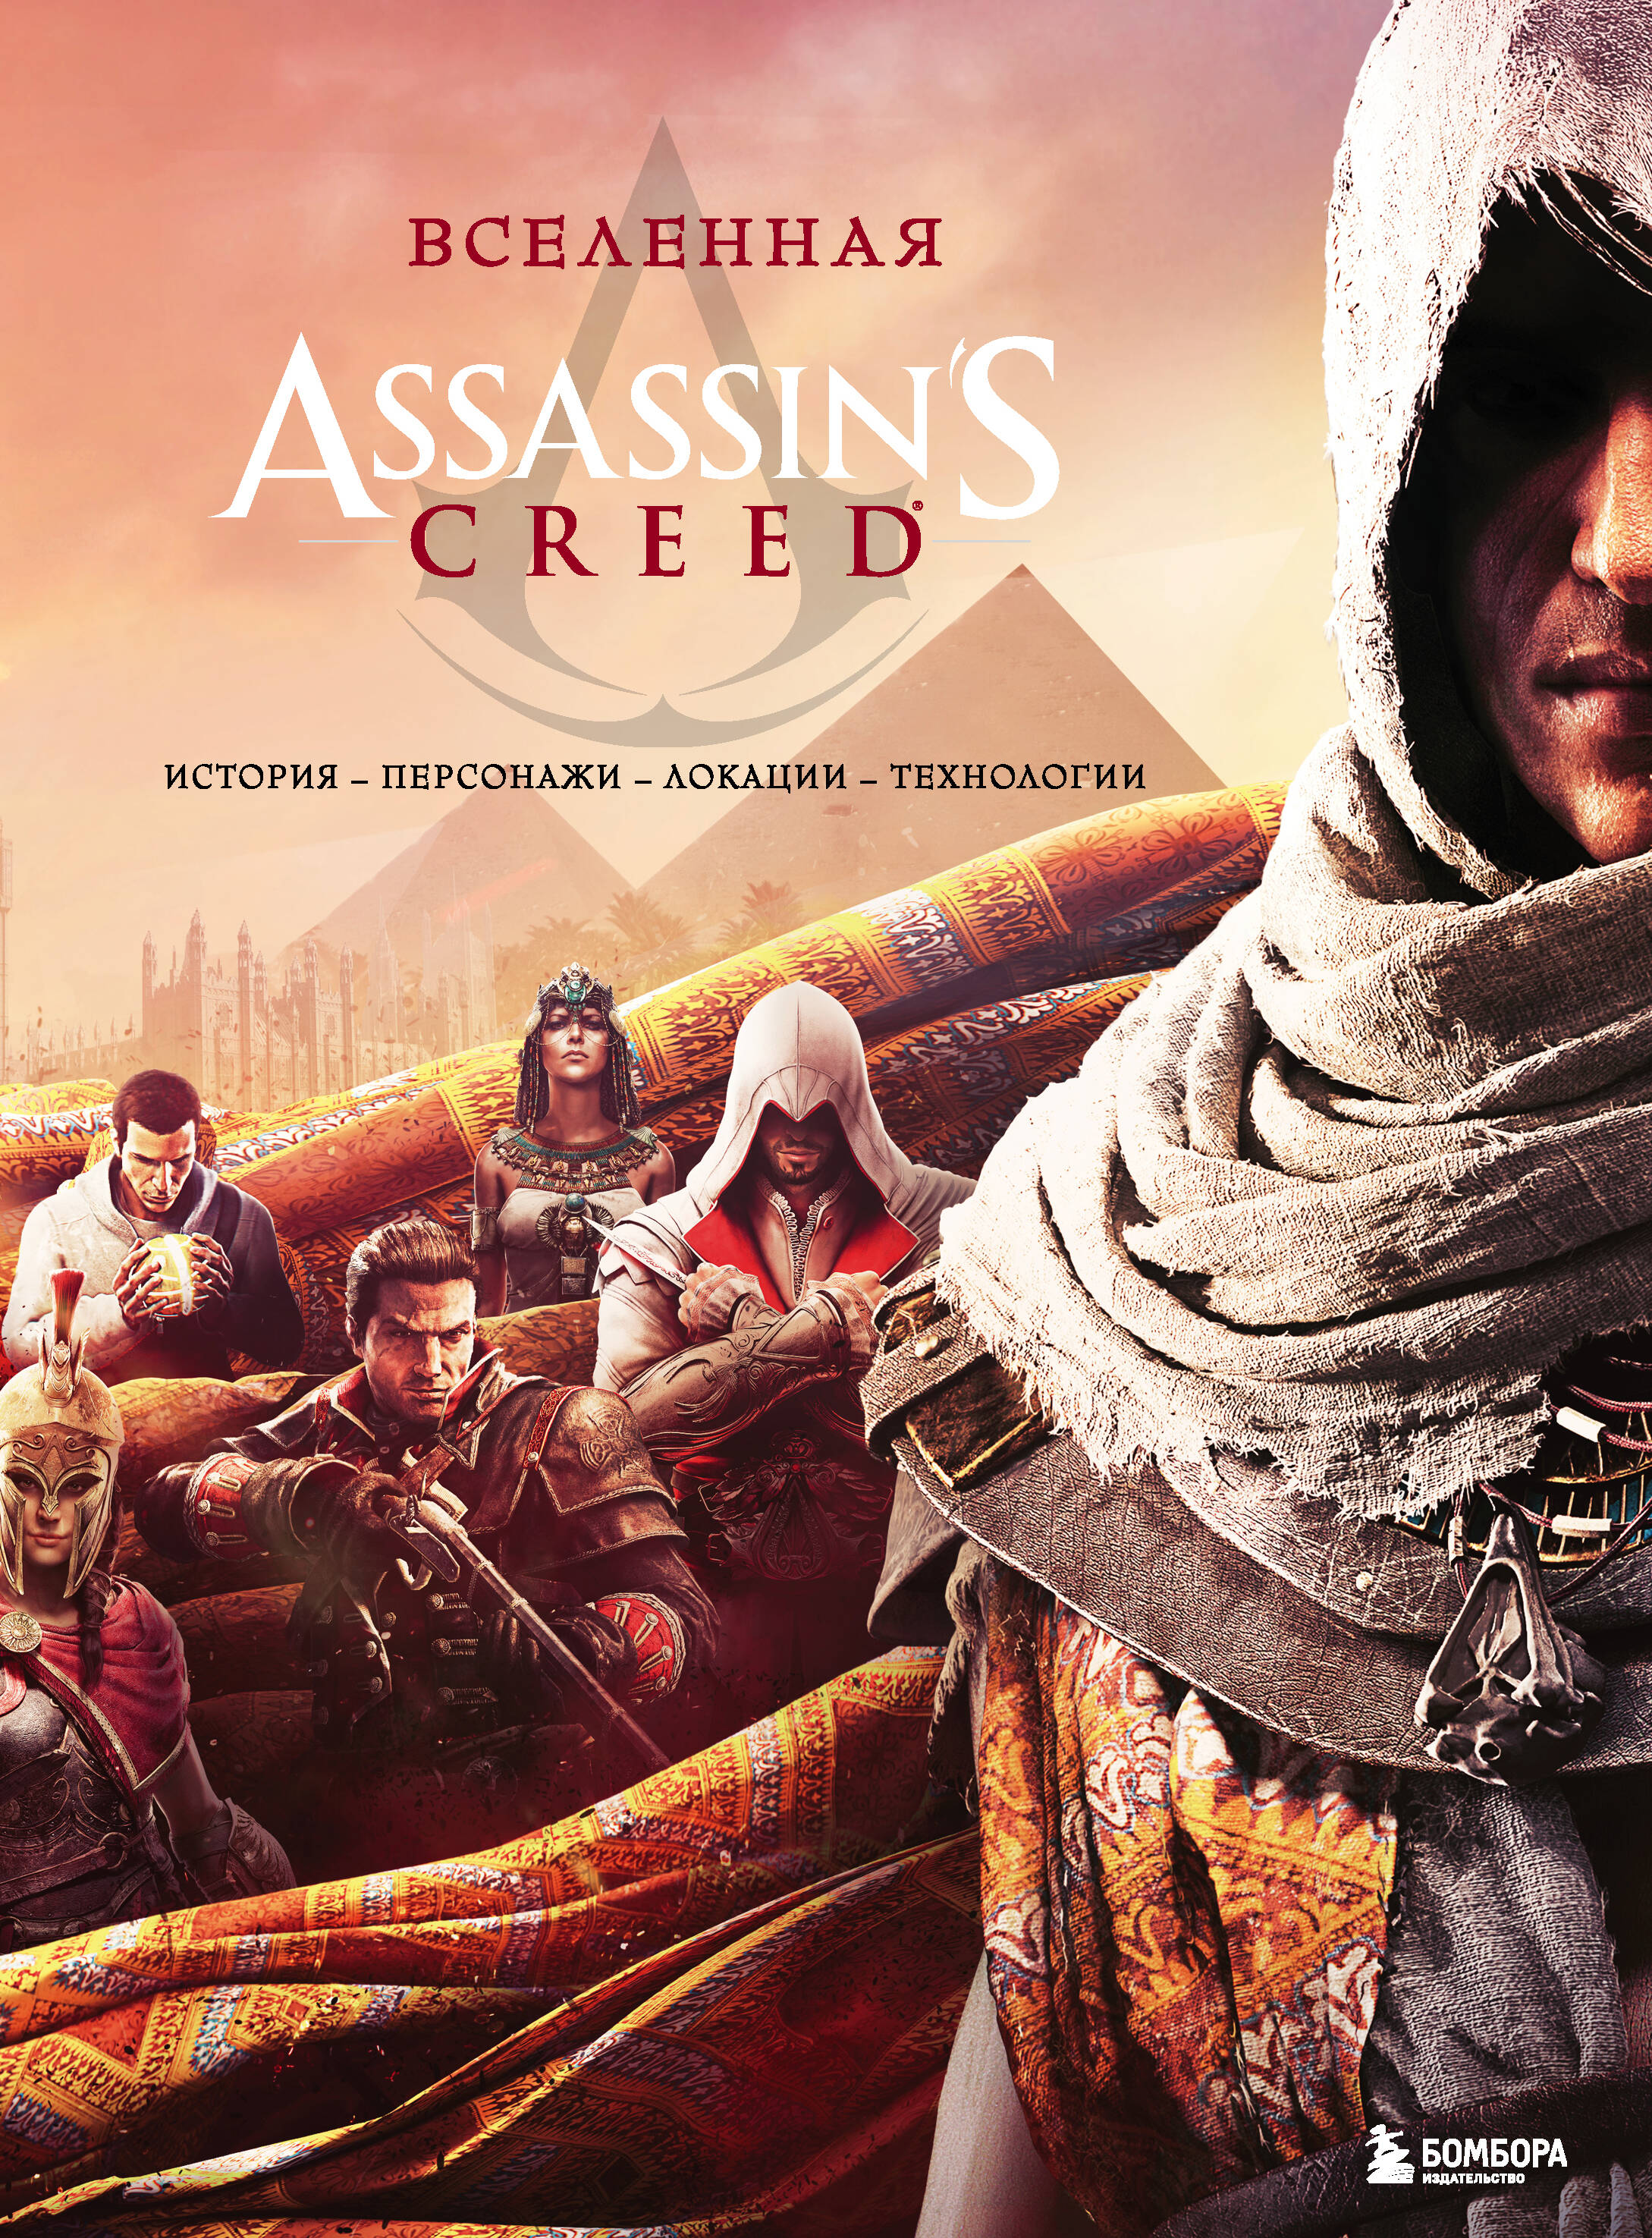 Вселенная Assassins Creed: история, персонажи, локации, технологии вселенная assassin s creed история персонажи локации технологии